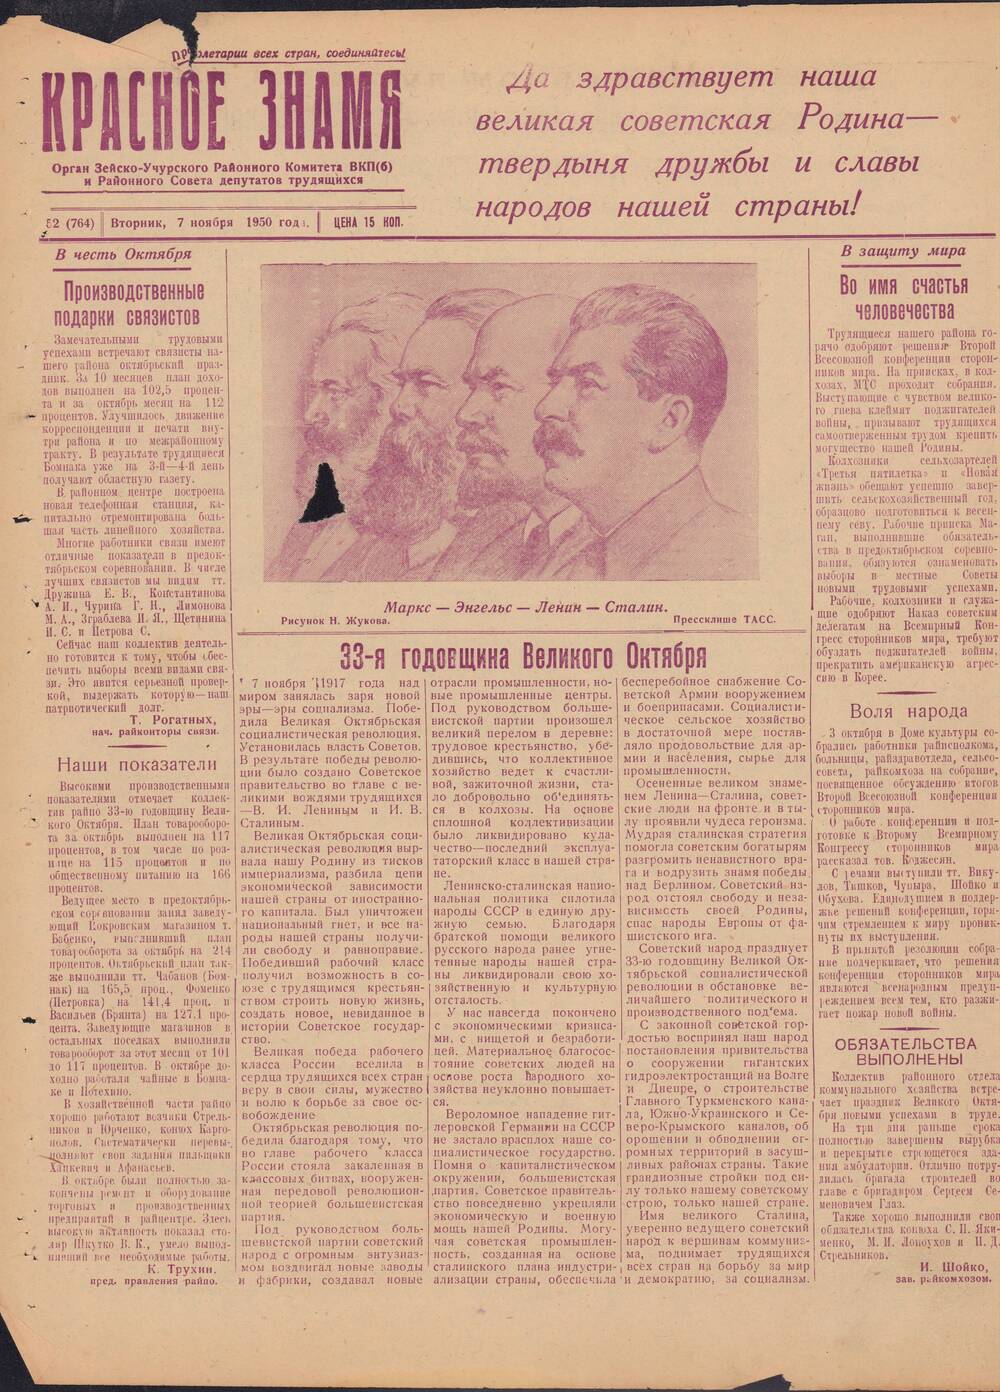 Газета Красное знамя №52 (764) от 7 ноября 1950 года.